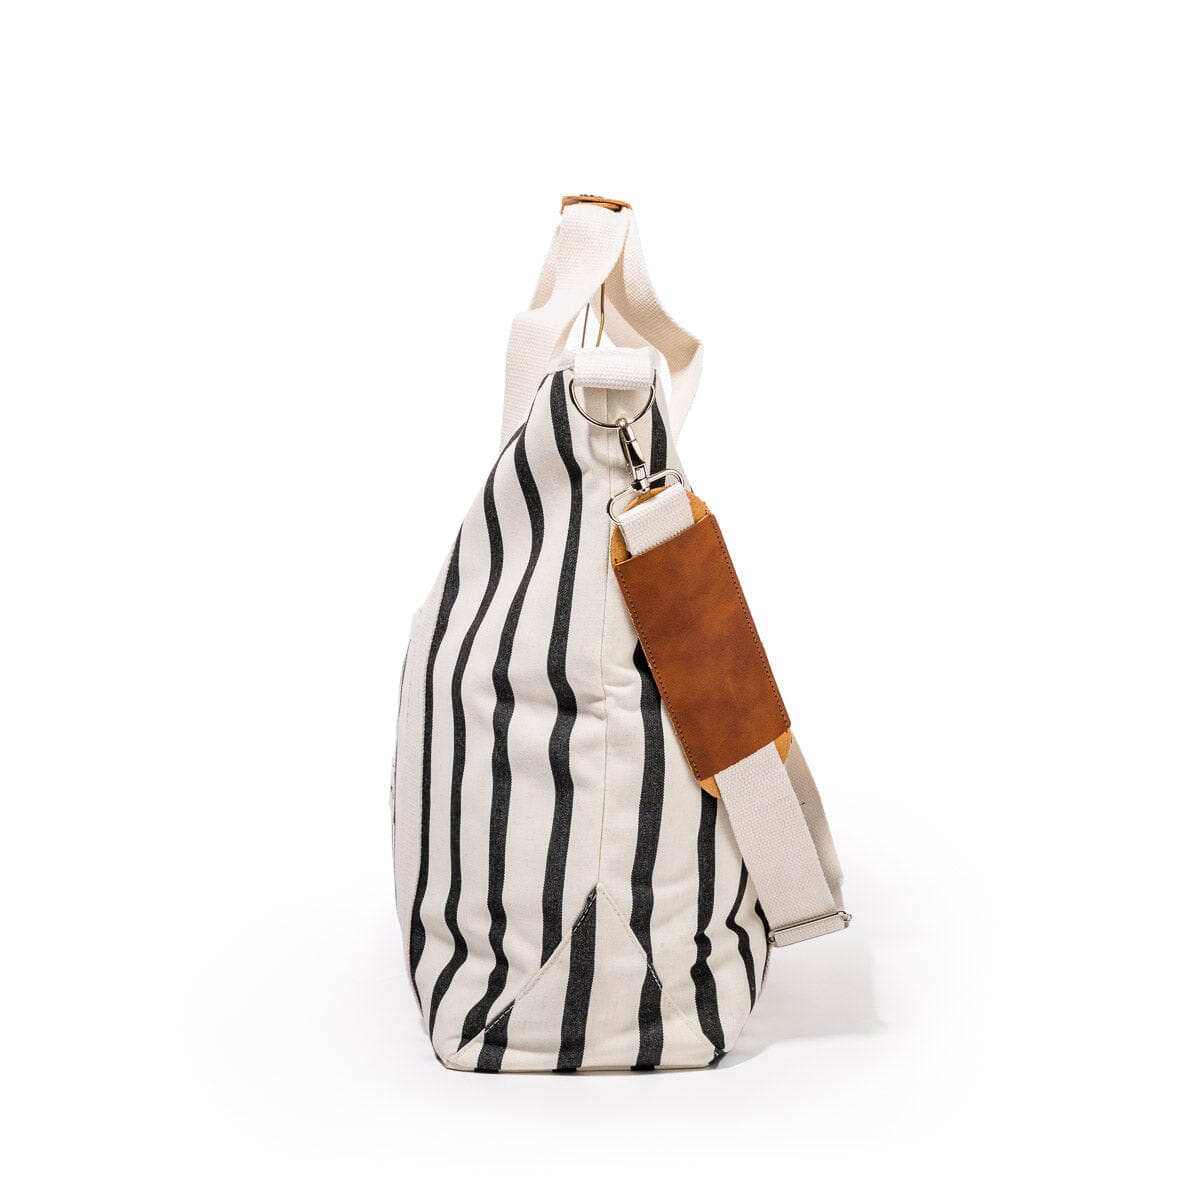 The Cooler Tote Bag - Monaco Black Stripe Cooler Tote Business & Pleasure Co 